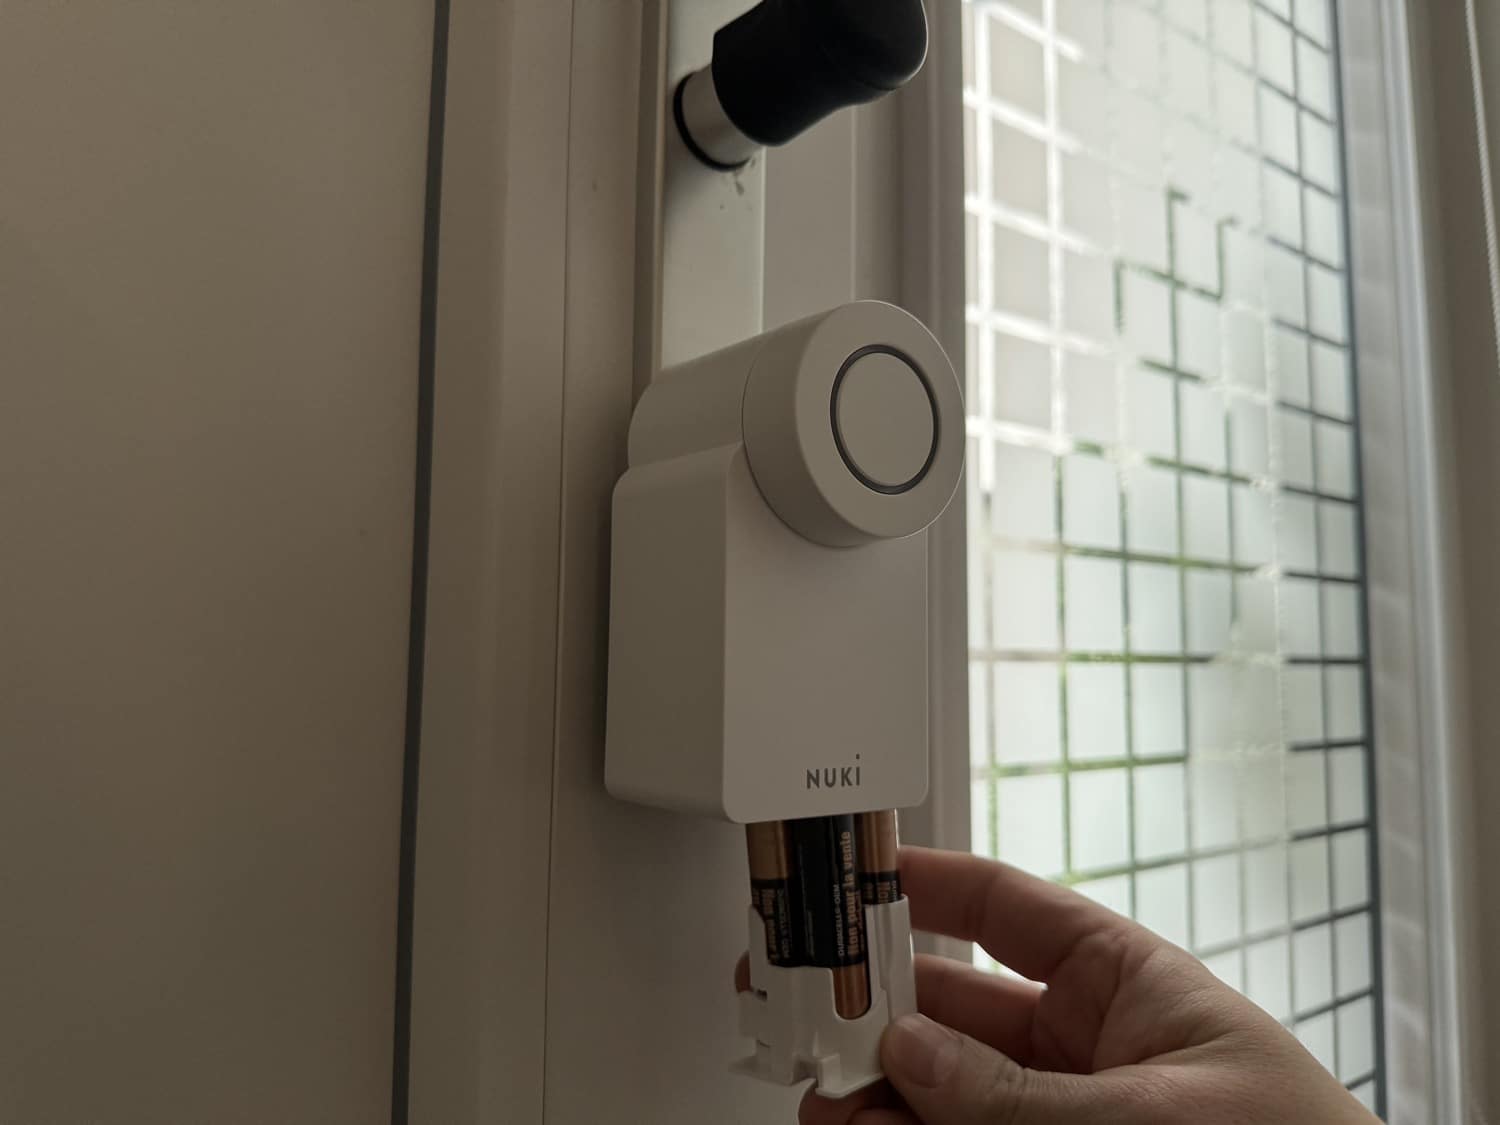 NUKI Smart Lock 4.0 Pro im Test: Die smarte Art Türen zu öffnen -  Hardware-Inside